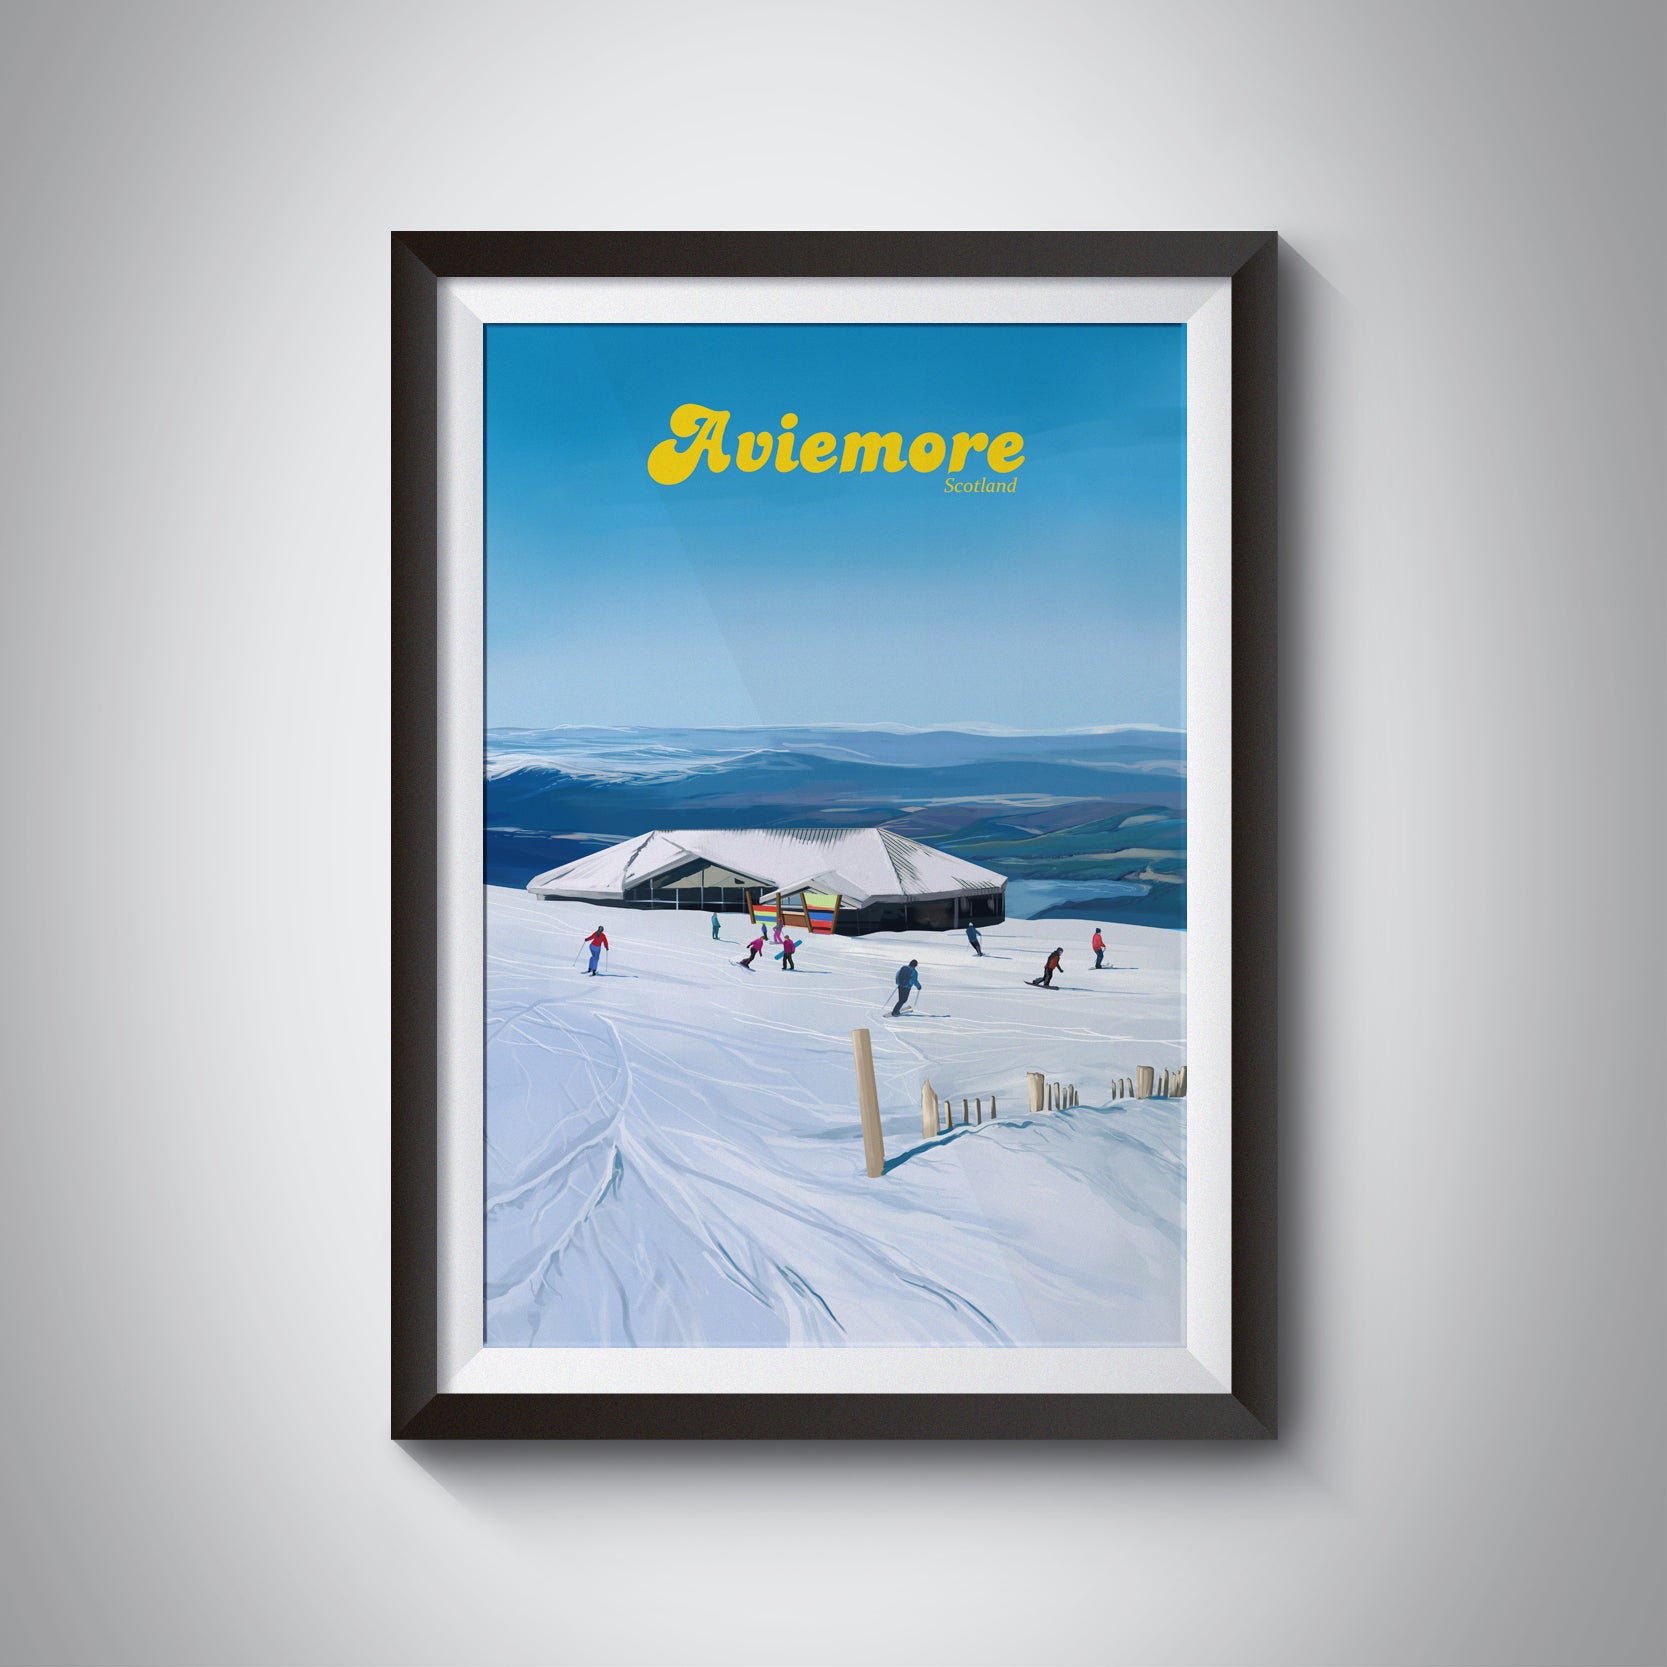 Aviemore UK Ski Resort Travel Poster